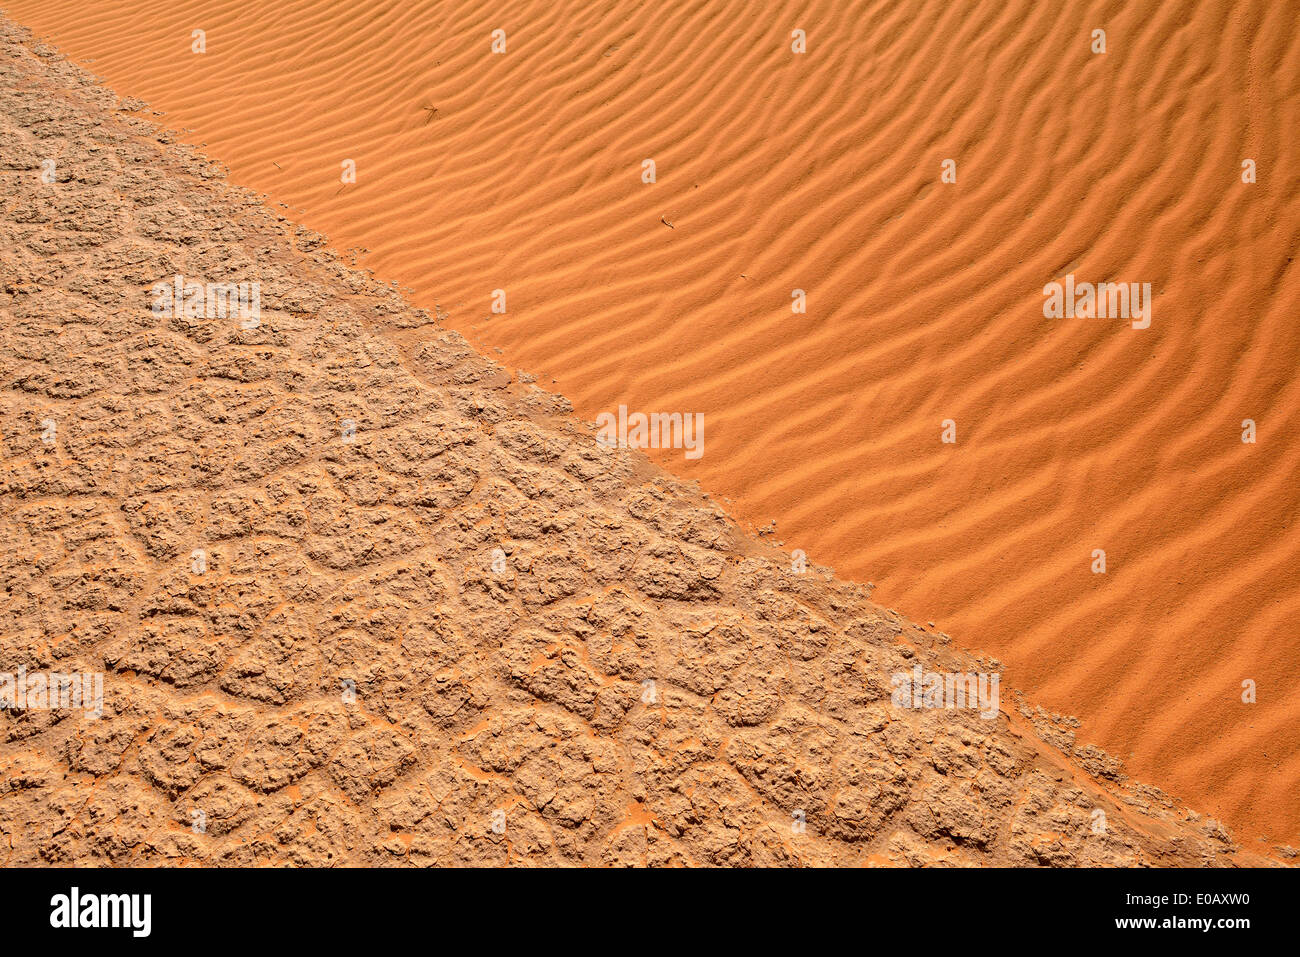 Algeria, Tassili n Ajjer, Sahara, de sel et d'argile pan répond à sand dune Banque D'Images